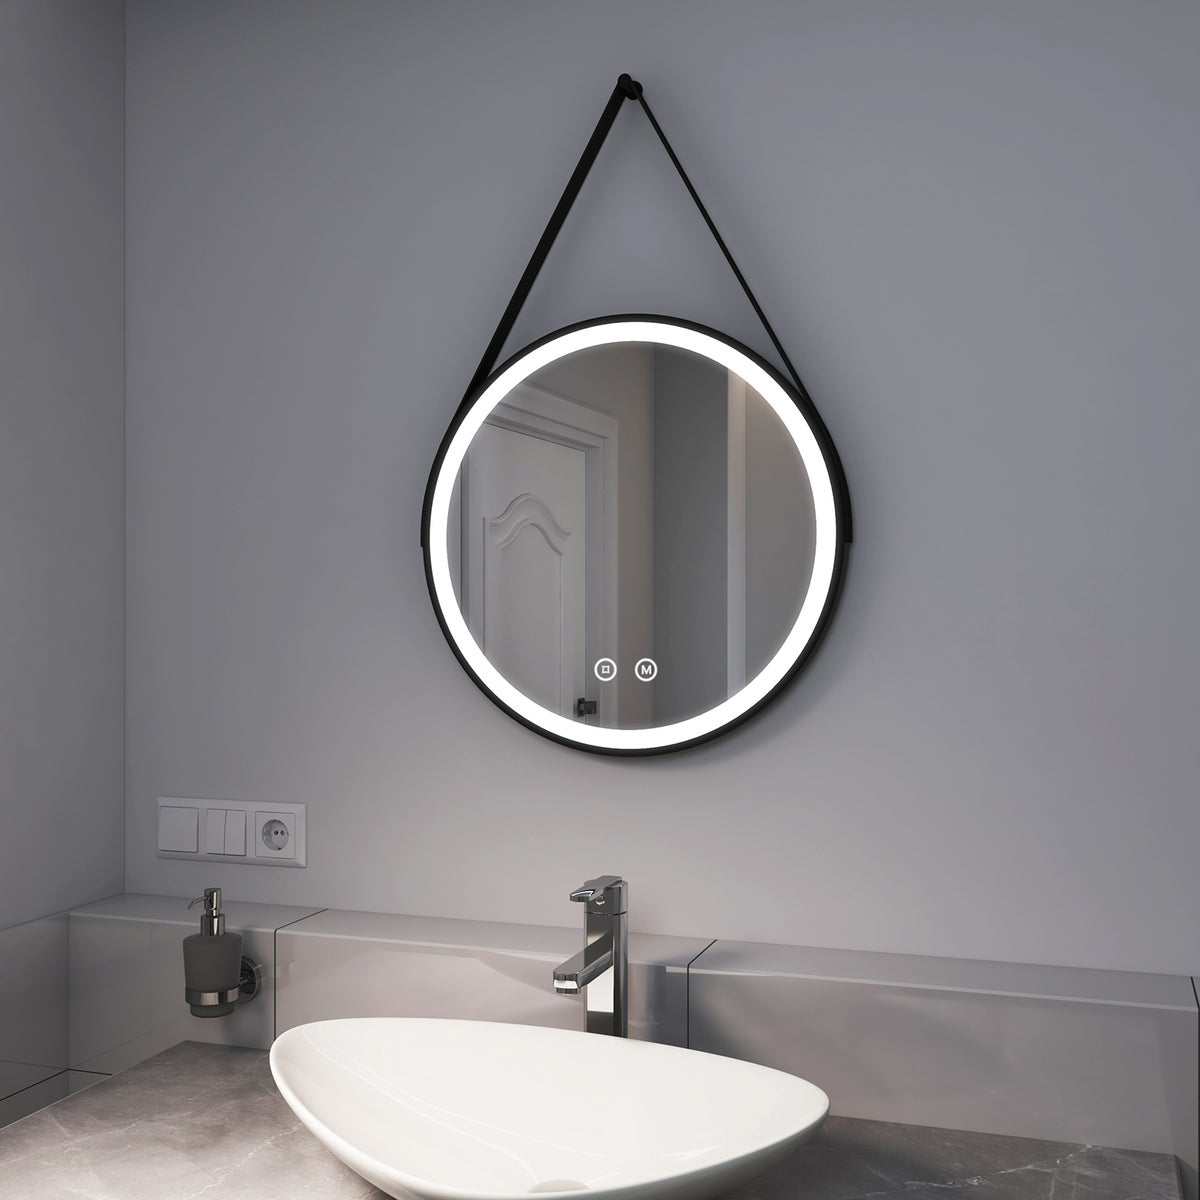 EMKE Badspiegel mit Beleuchtung Schwarz Rahmen und Riemen ф50cm, 3 Lichtfarben,Dimmbar